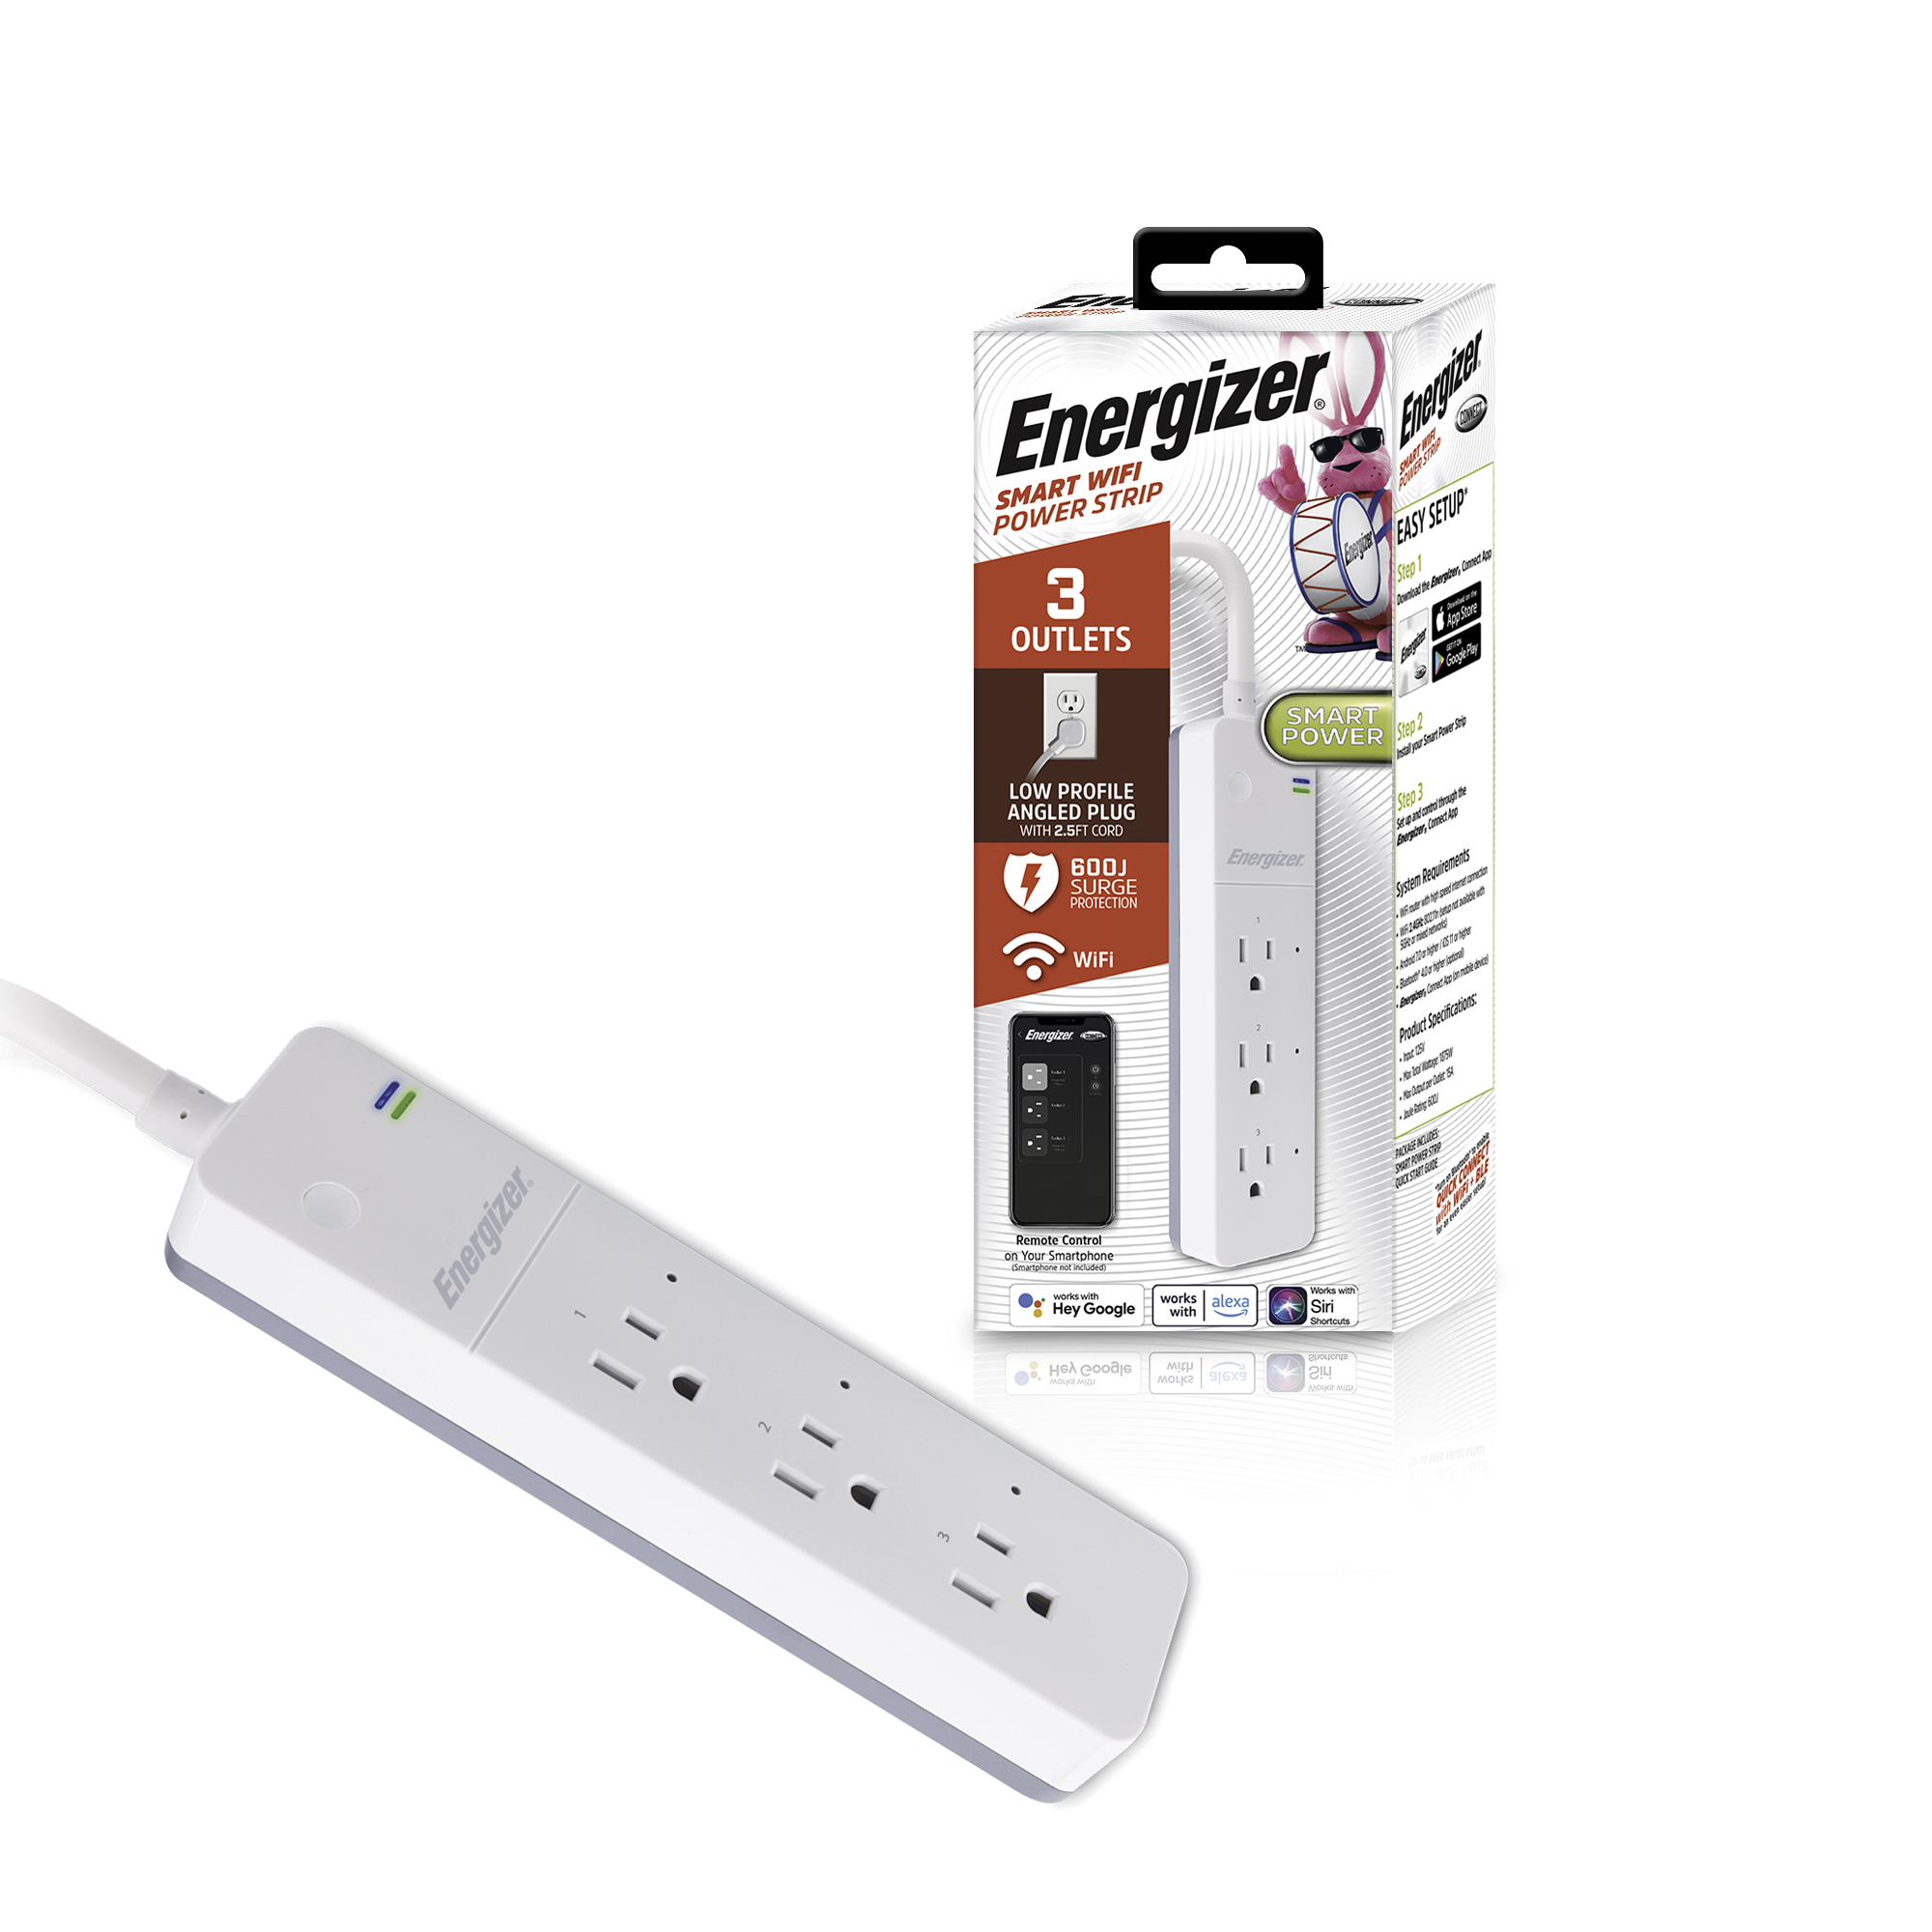 Energizer, Electronics